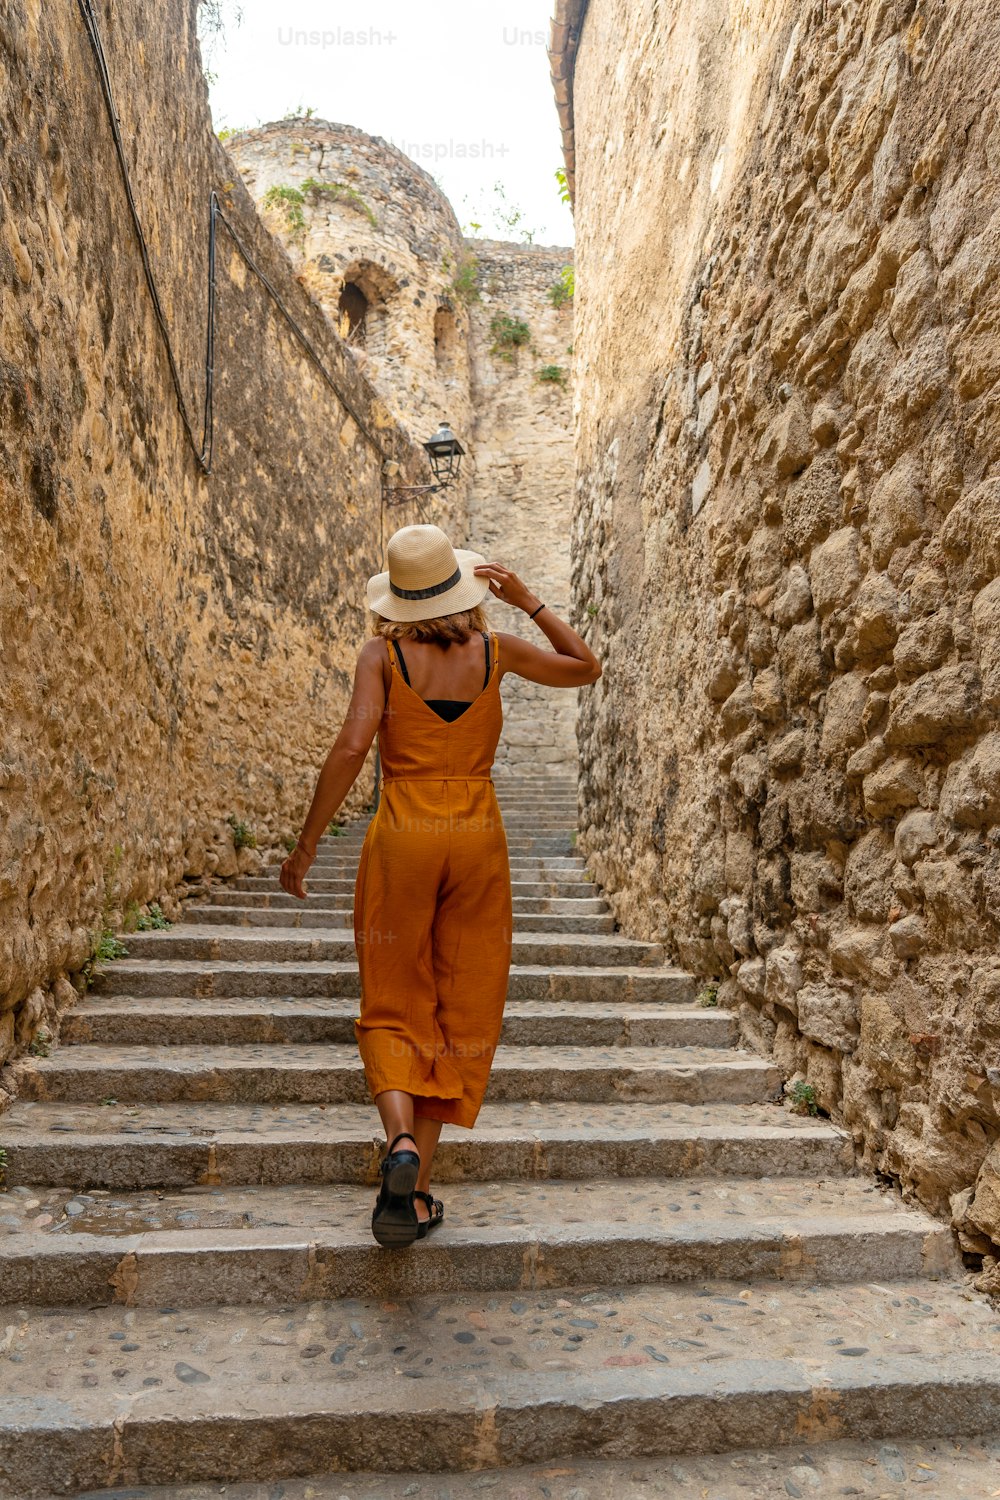 Girona città medievale, un giovane turista con un cappello sulle scale delle strade del centro storico, Costa Brava della Catalogna nel Mediterraneo. Spagna